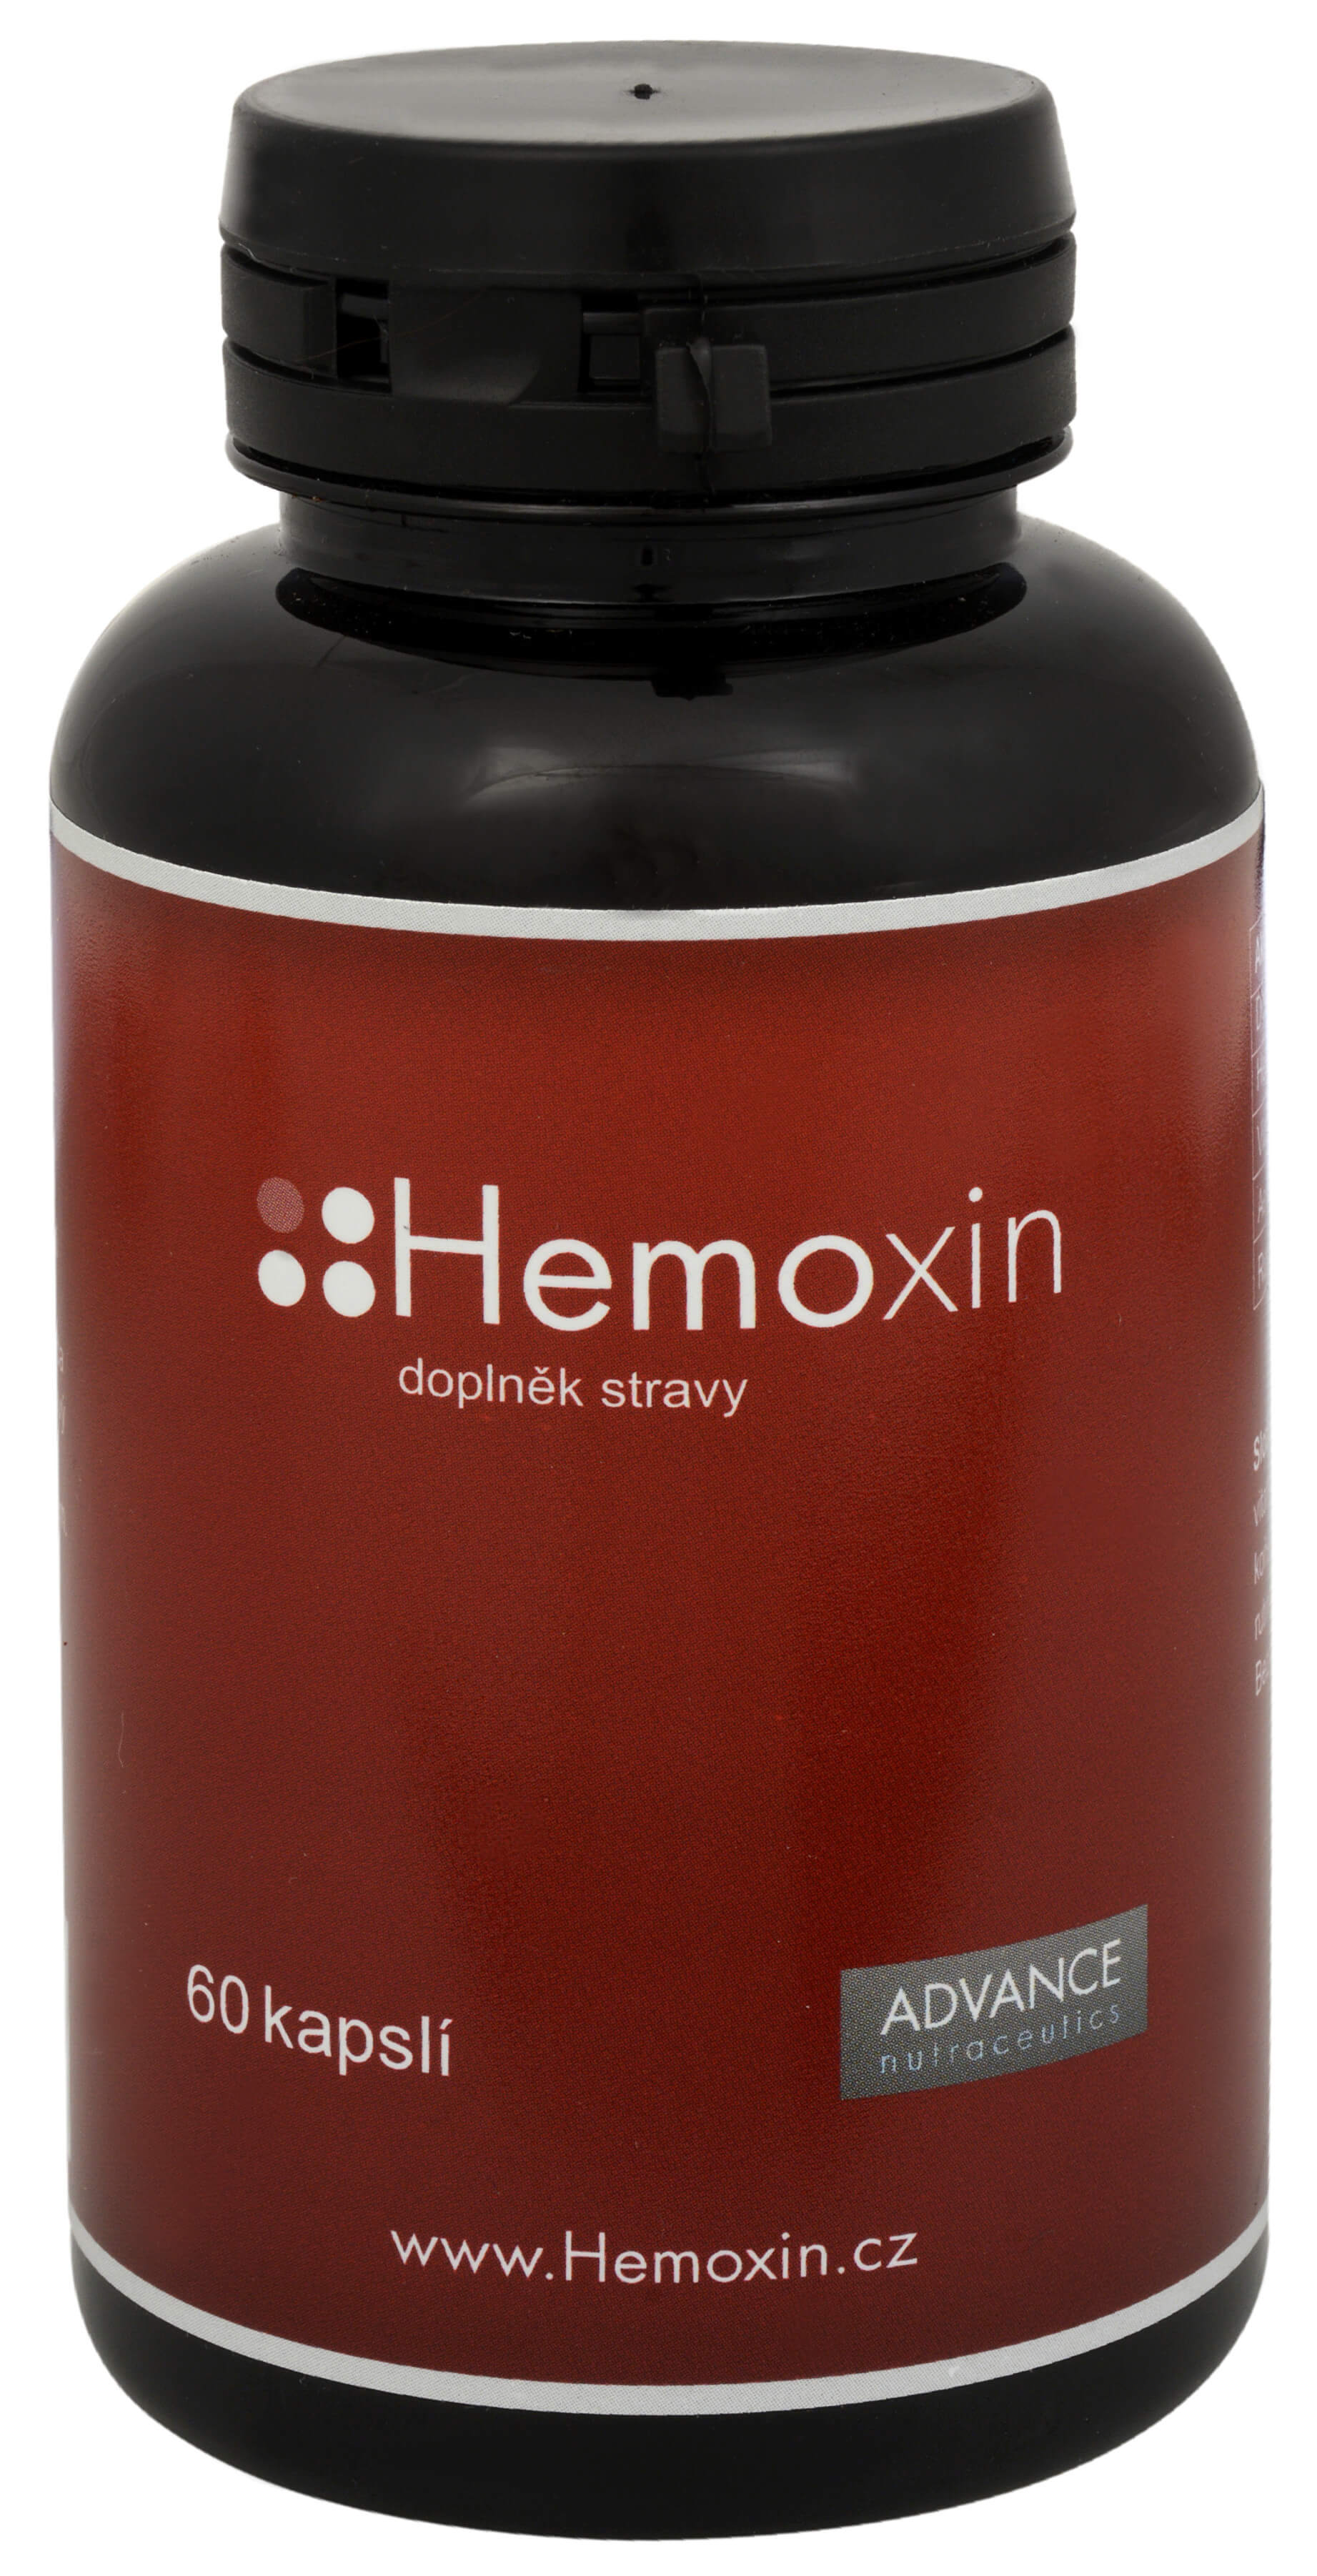 Zobrazit detail výrobku Advance nutraceutics Hemoxin 60 kapslí + 2 měsíce na vrácení zboží